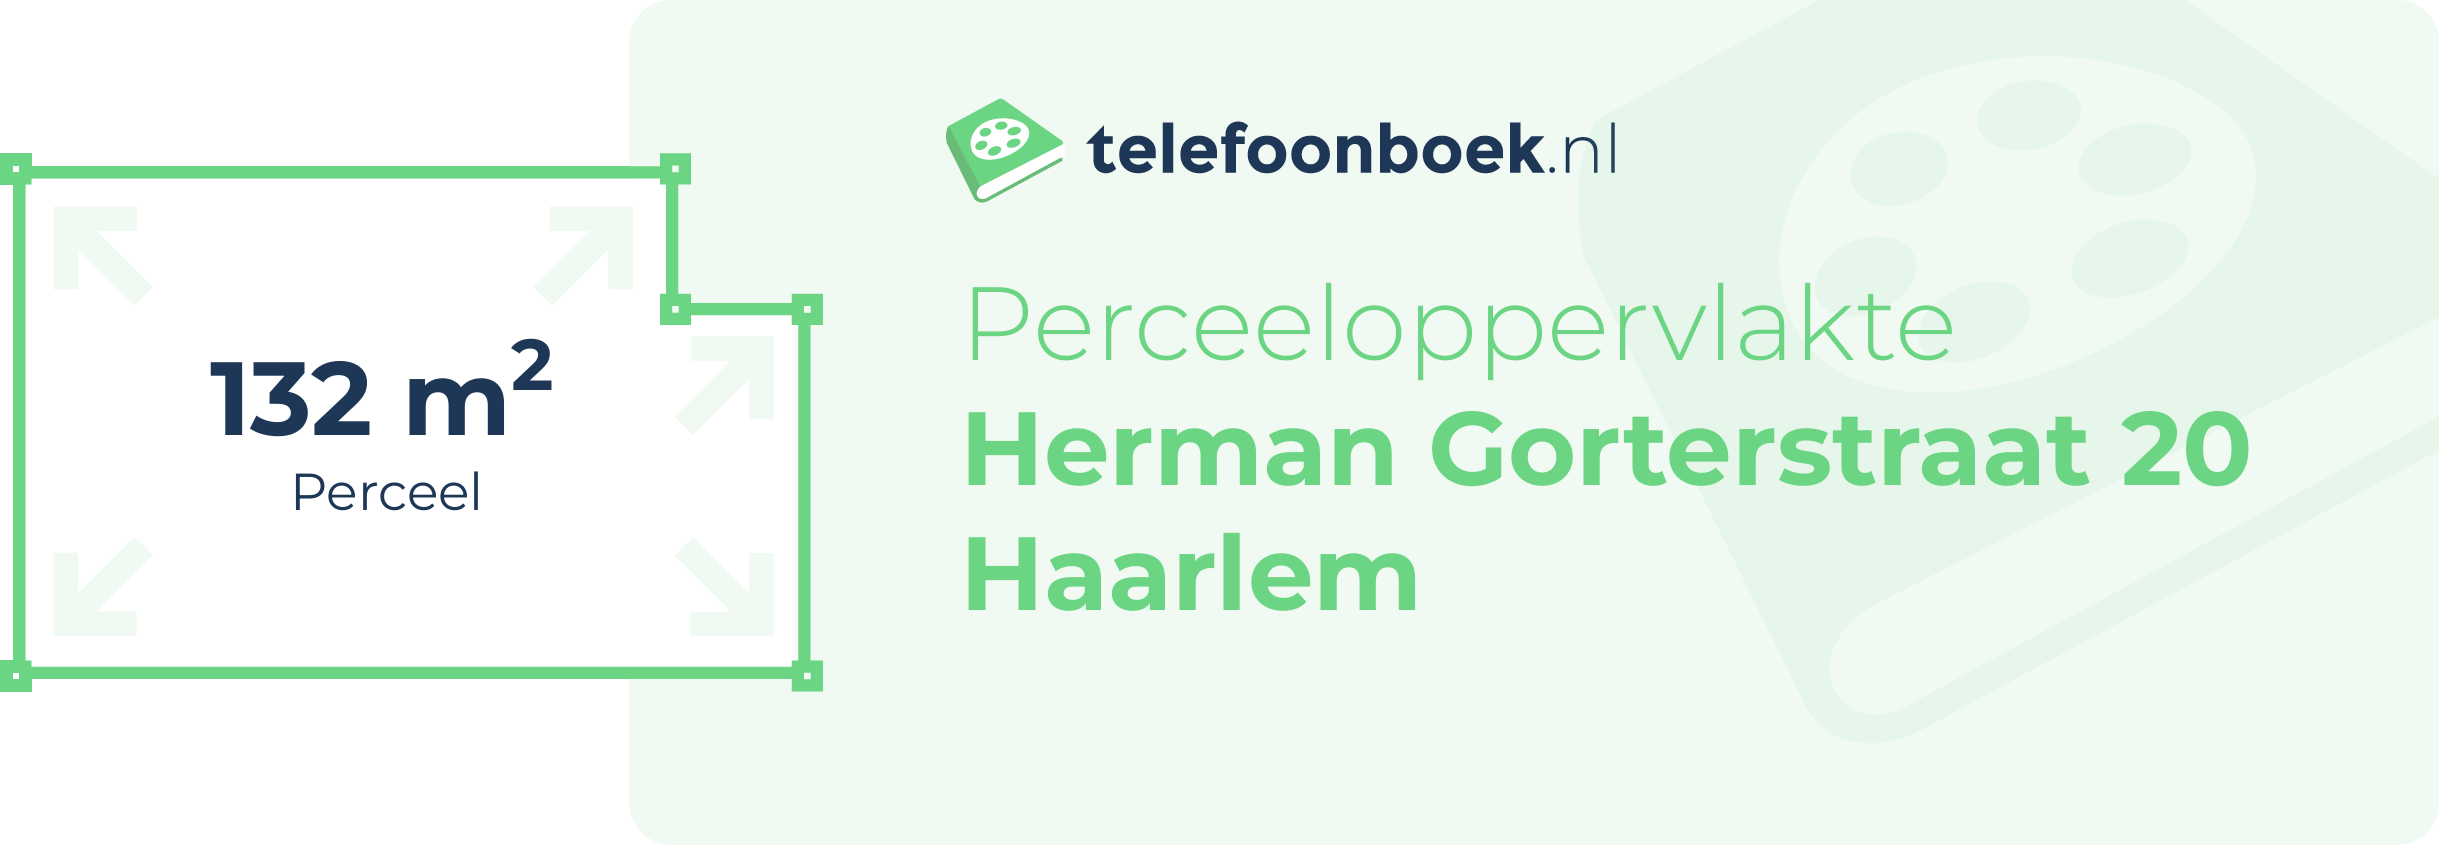 Perceeloppervlakte Herman Gorterstraat 20 Haarlem